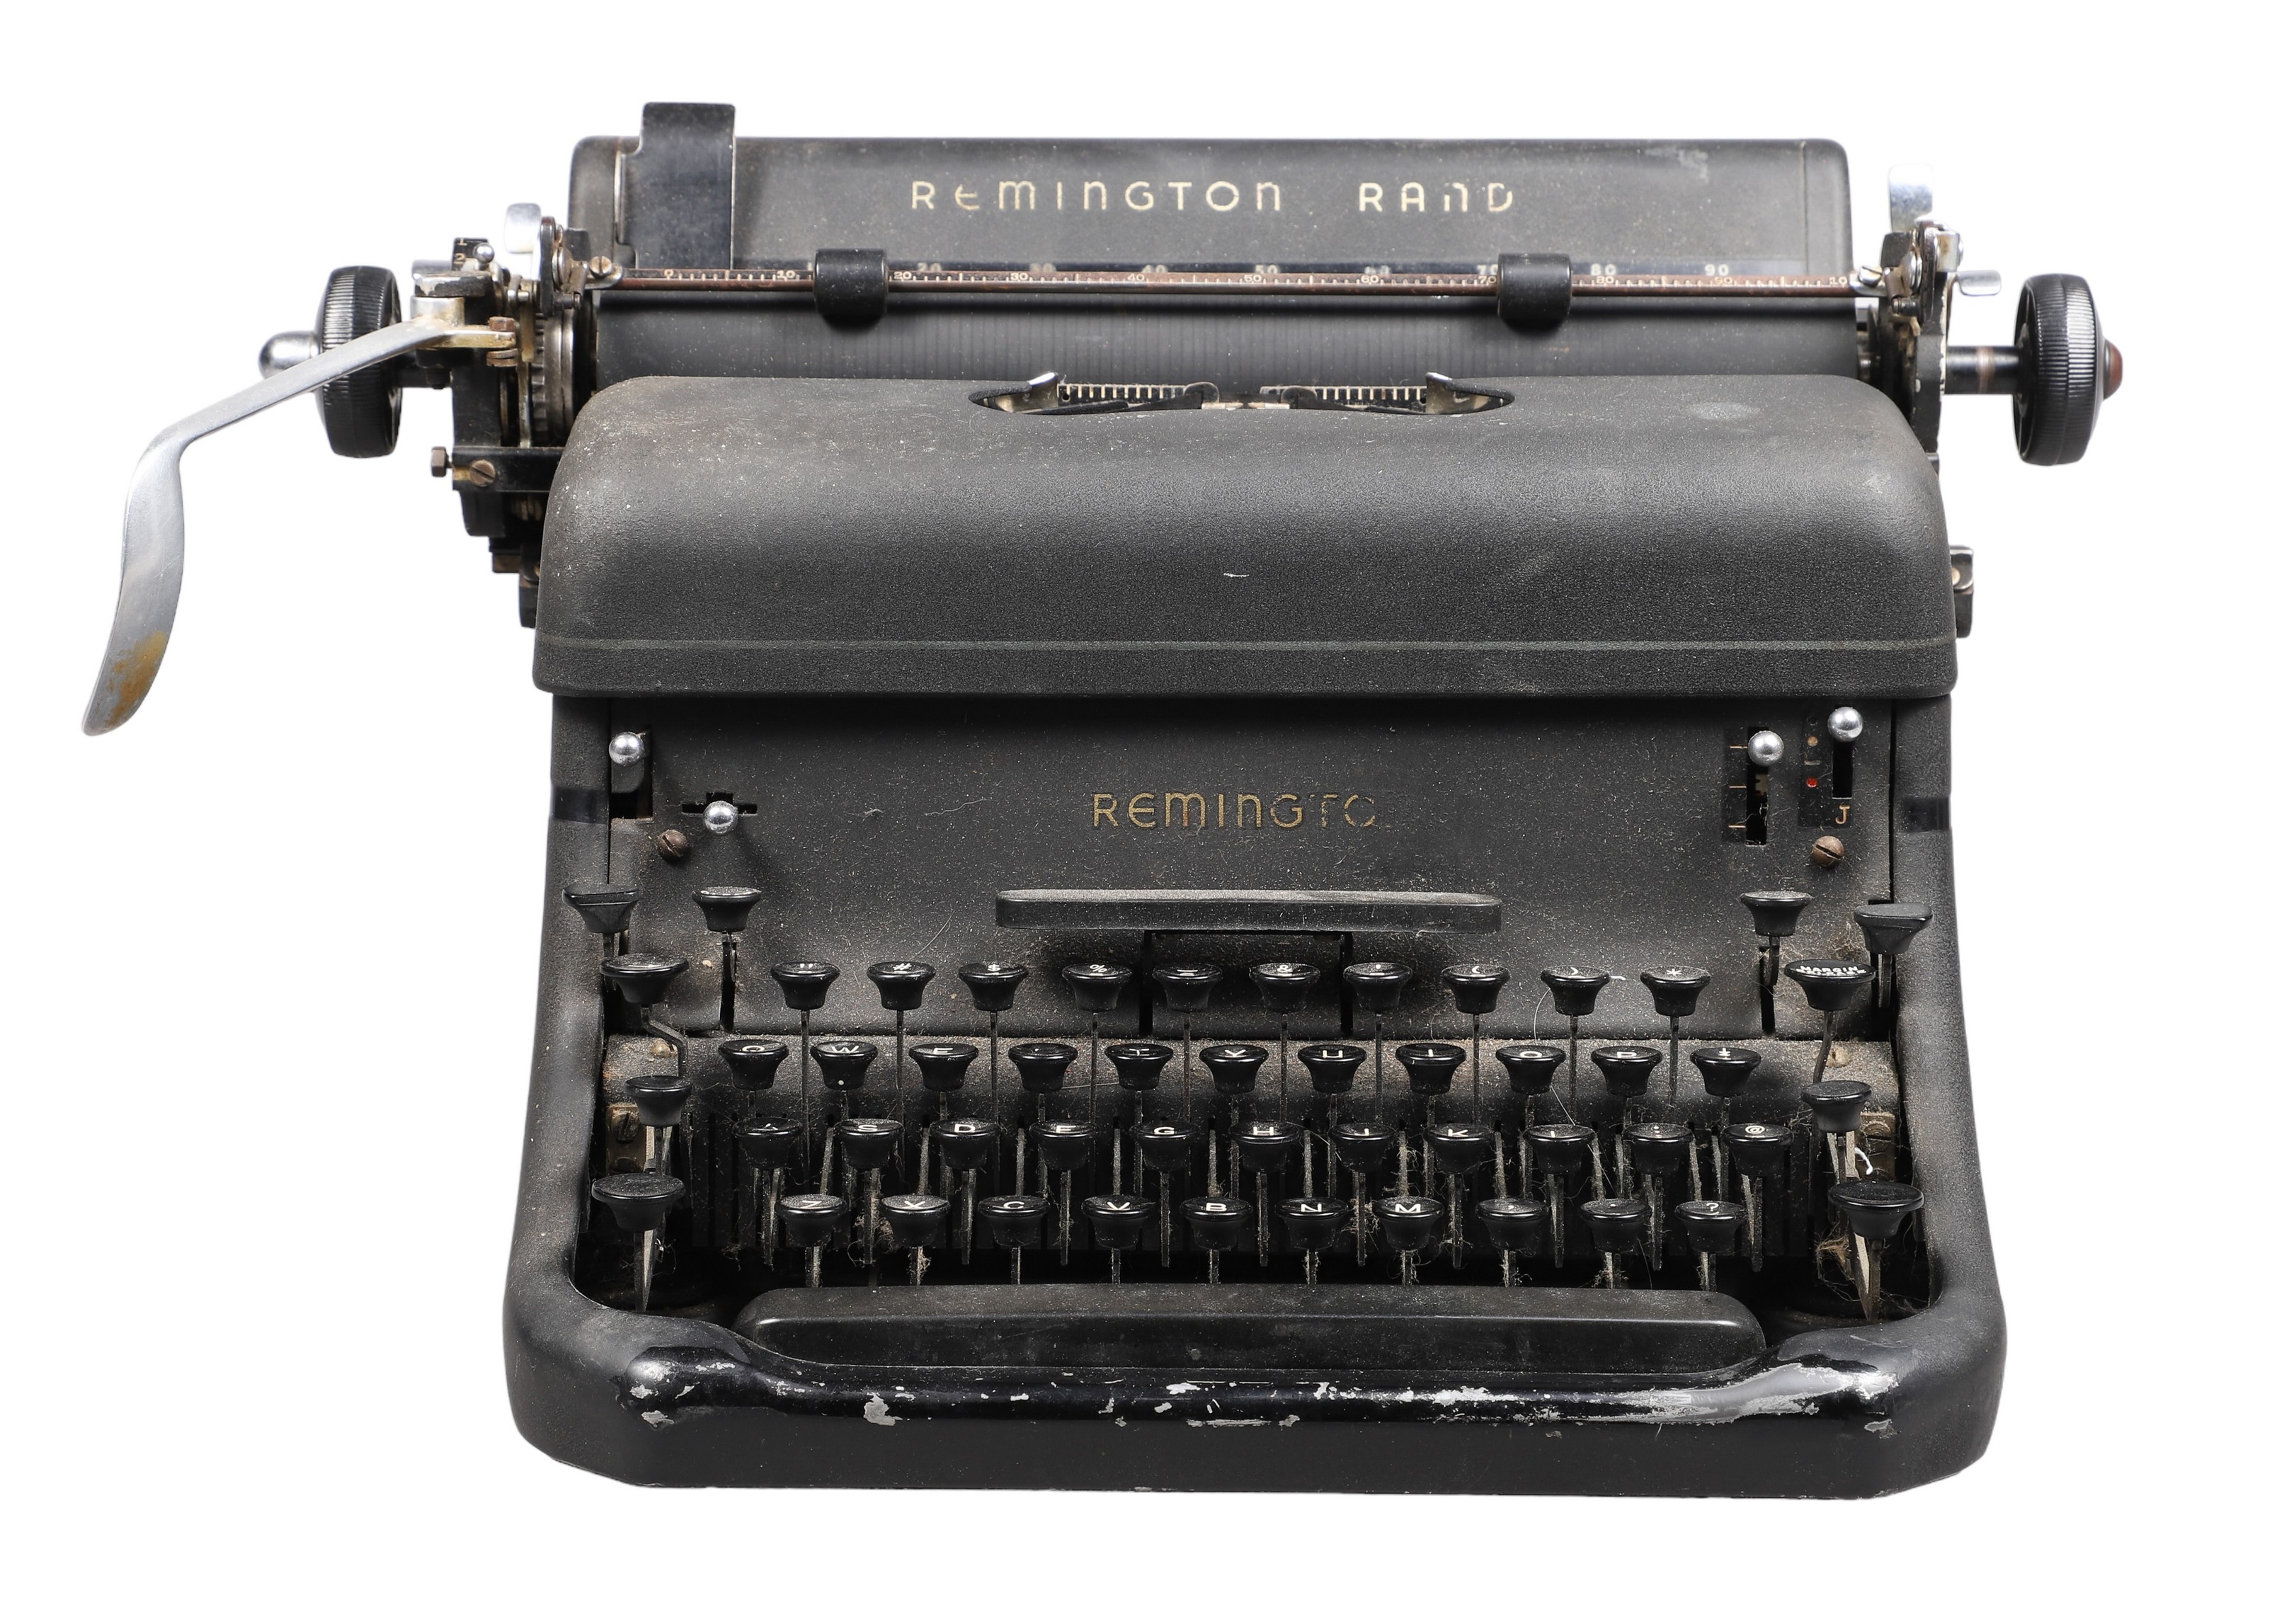 Vintage Remington Rand typewriter, 16